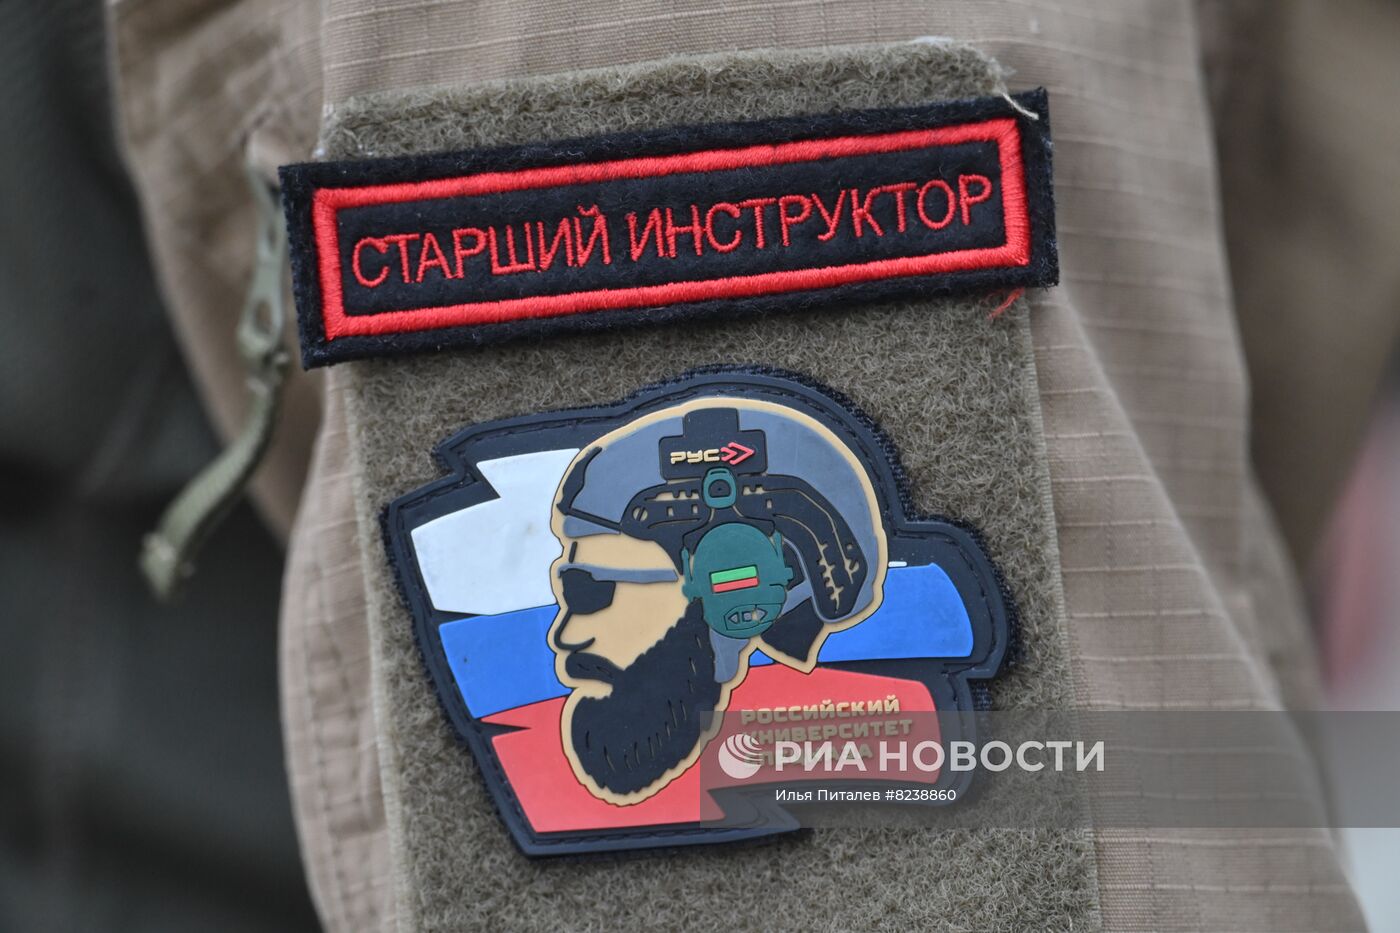 Российский университет спецназа в Гудермесе